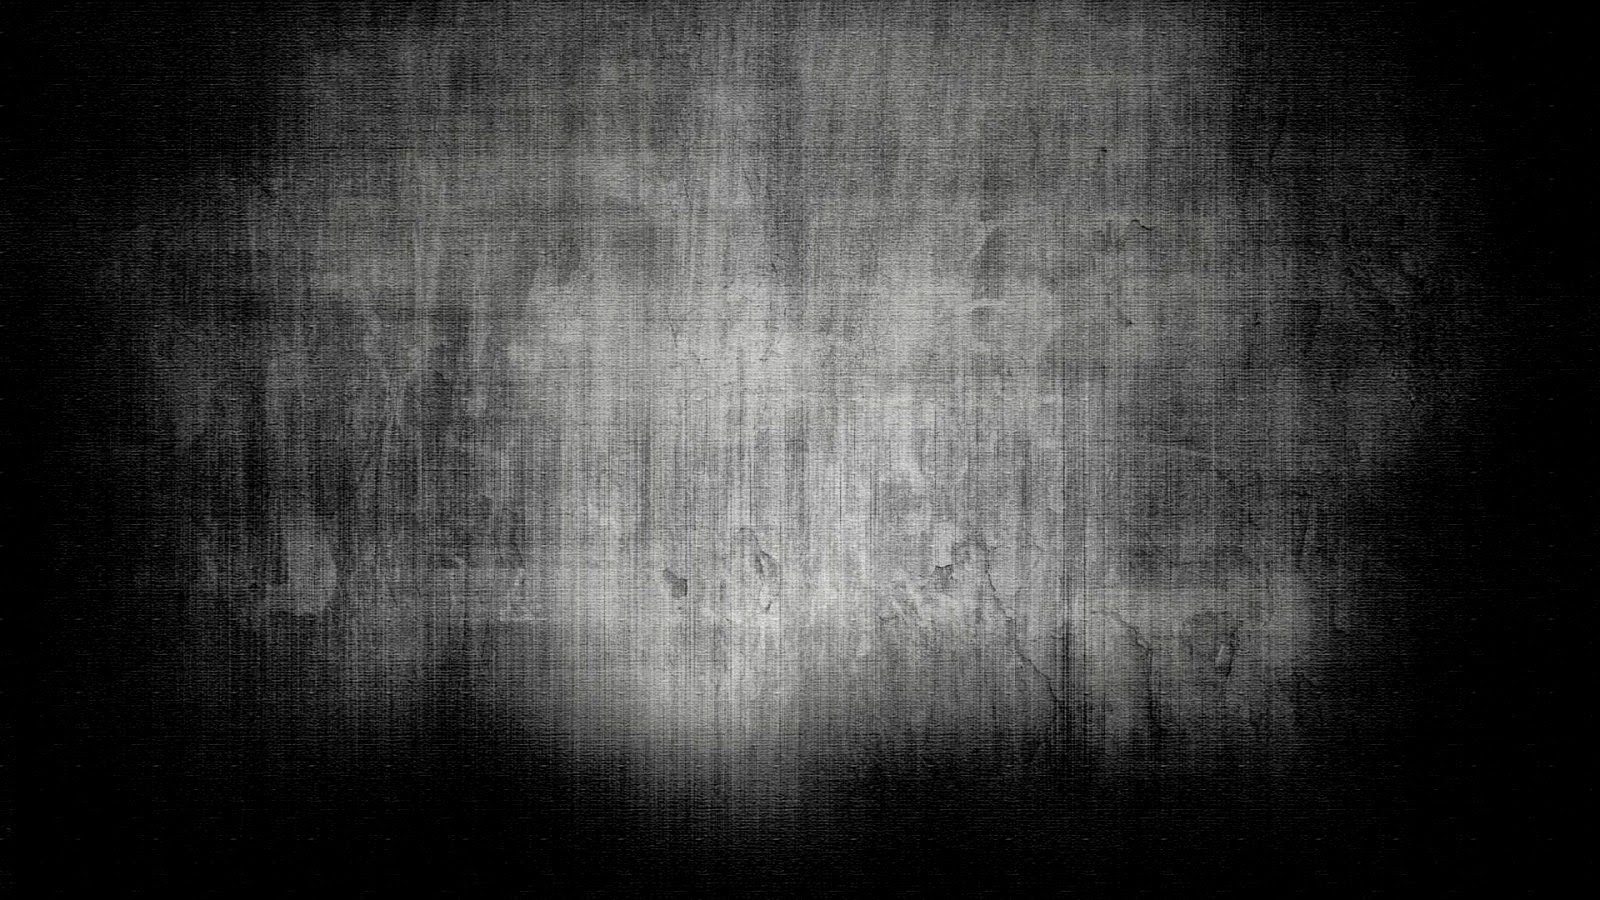 fondos de pantalla hitam polos,negro,texto,en blanco y negro,oscuridad,fotografía monocroma